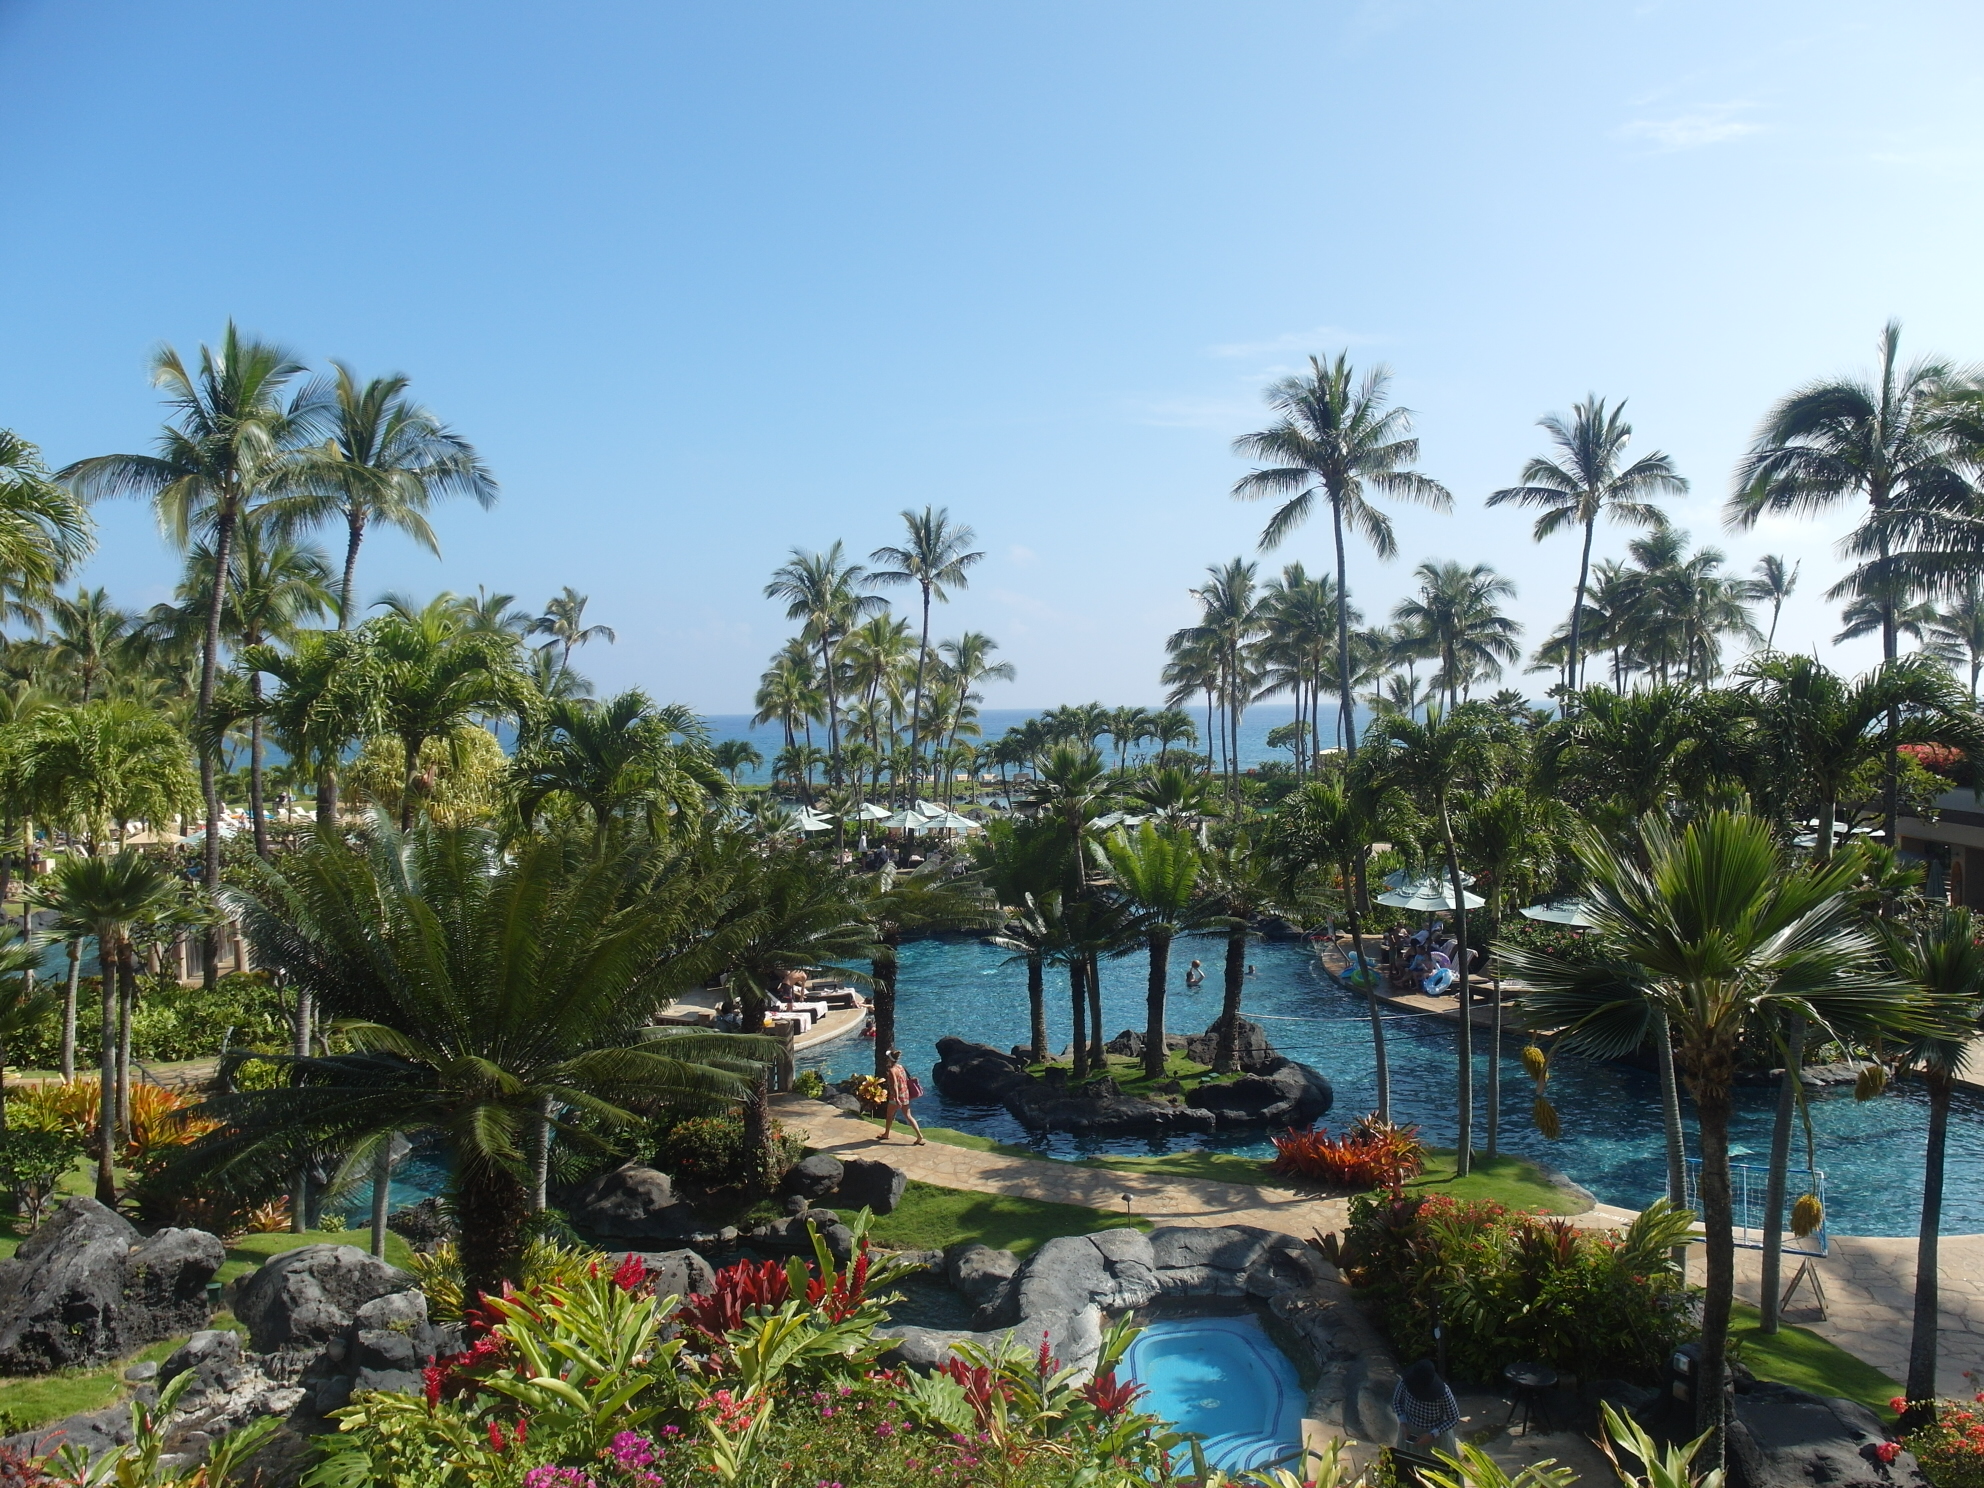 View of the pool deck of Grand Hyatt Kauai Resort & Spa